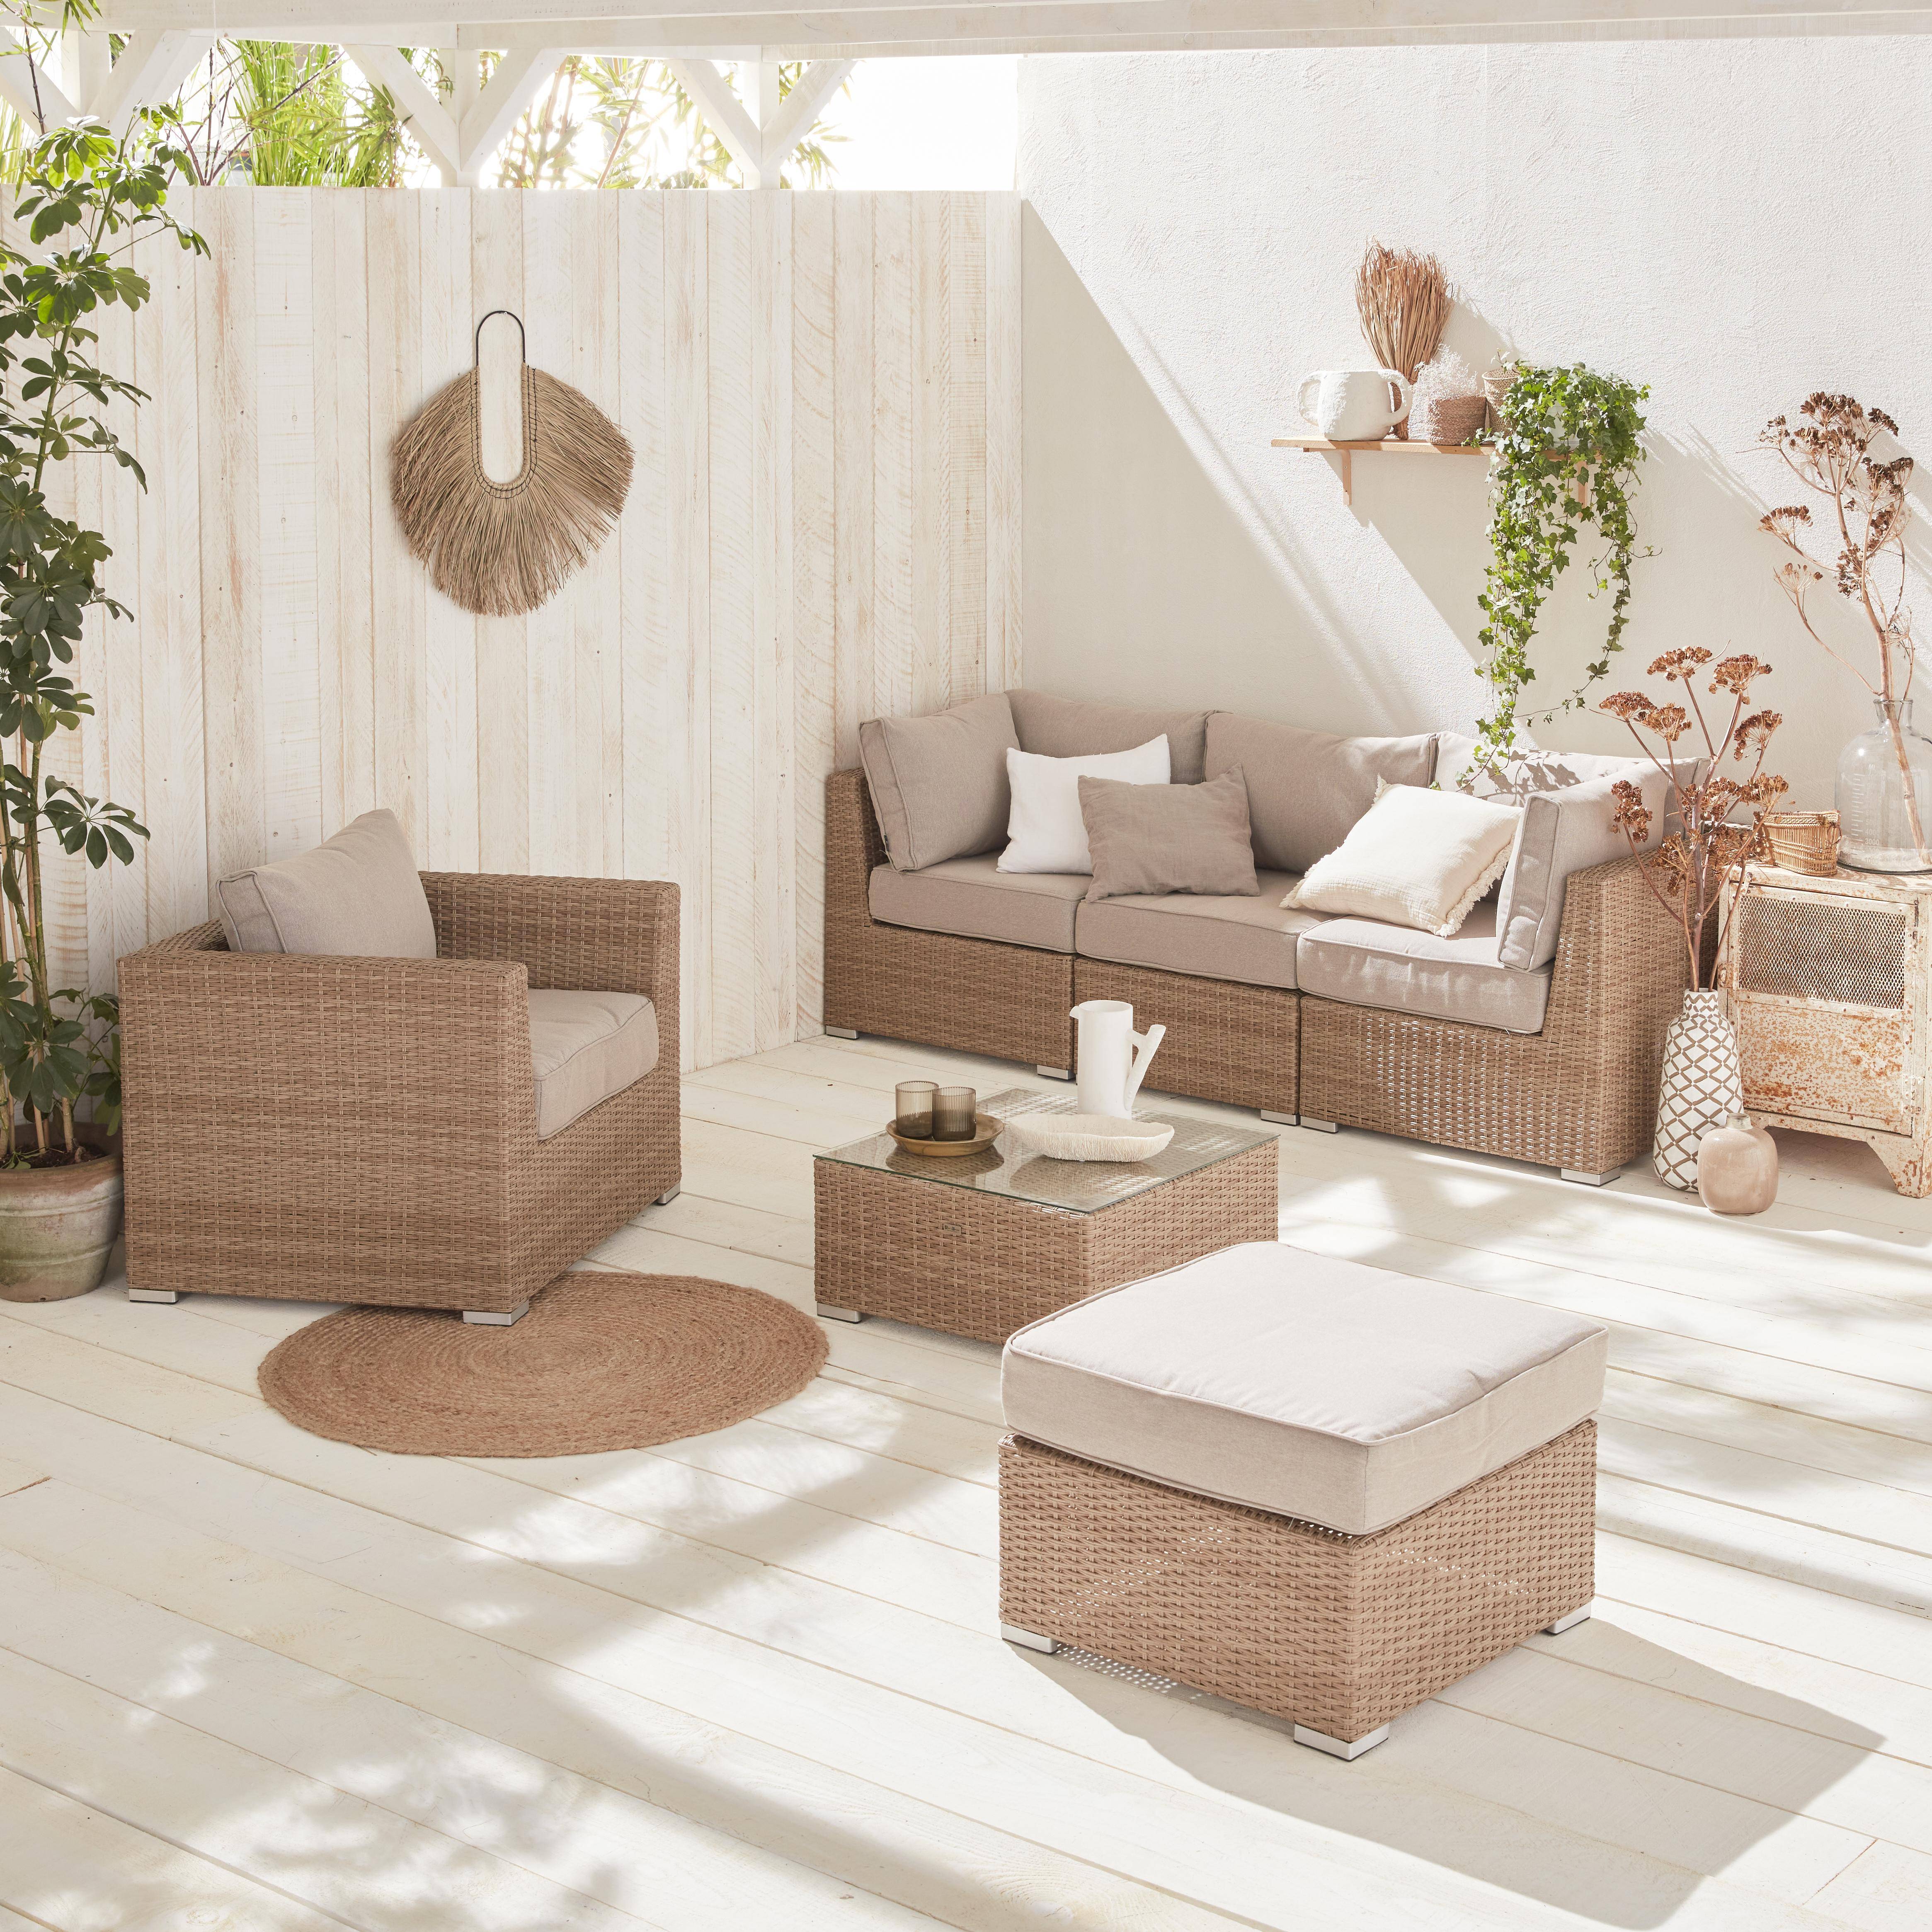 Muebles de jardín de resina trenzada redonda - VINCI - Cojines beige naturales - 5 asientos, ajustable, ultra cómodo, de alta gama,sweeek,Photo1